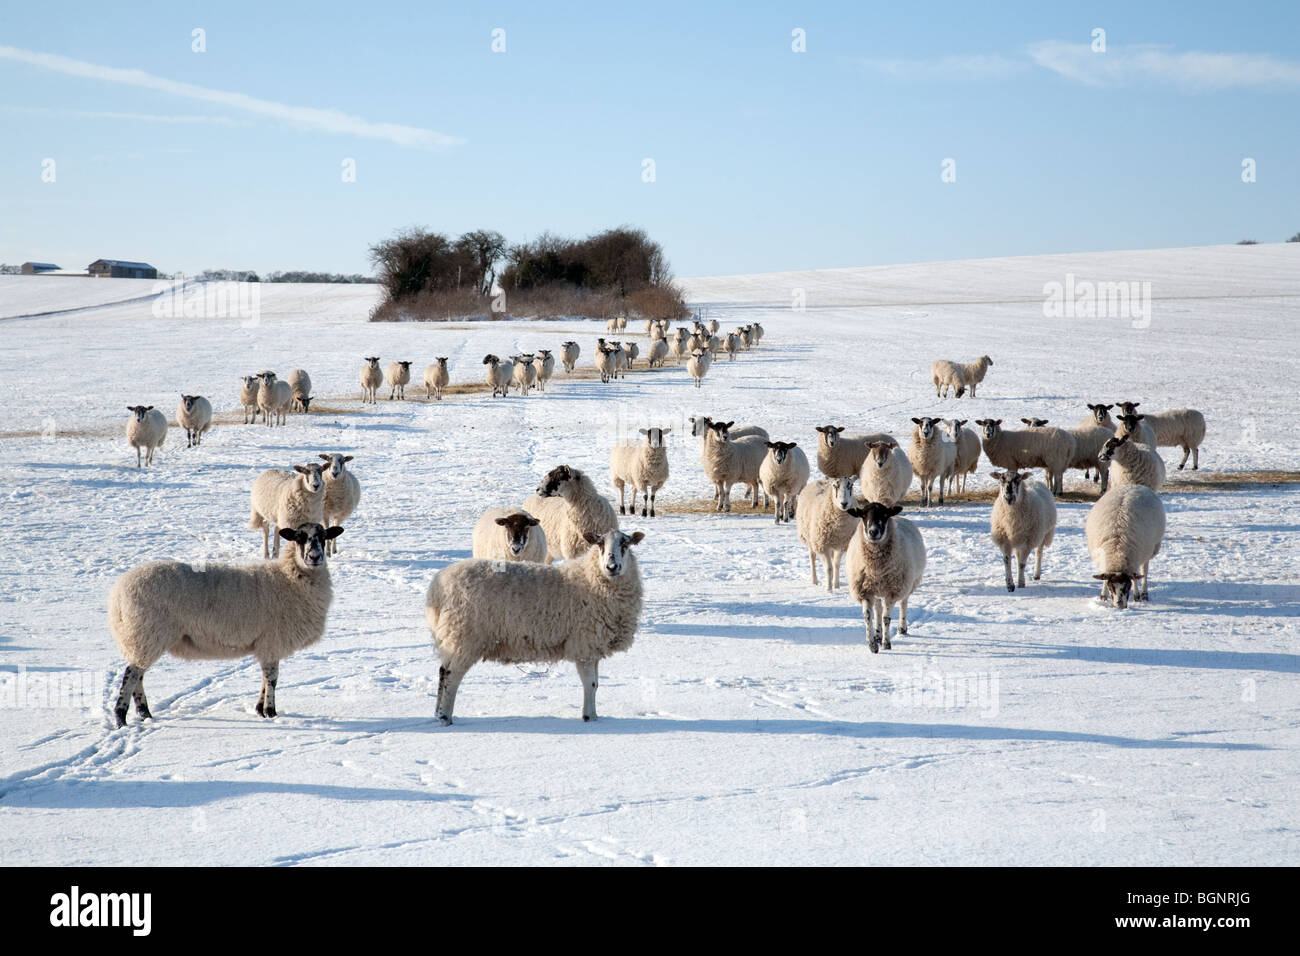 Herde von Schafen, die im Winter auf einem Feld im Schnee auf einer Schaffarm in der Nähe von Newmarket, Suffolk, Großbritannien, grasen Stockfoto